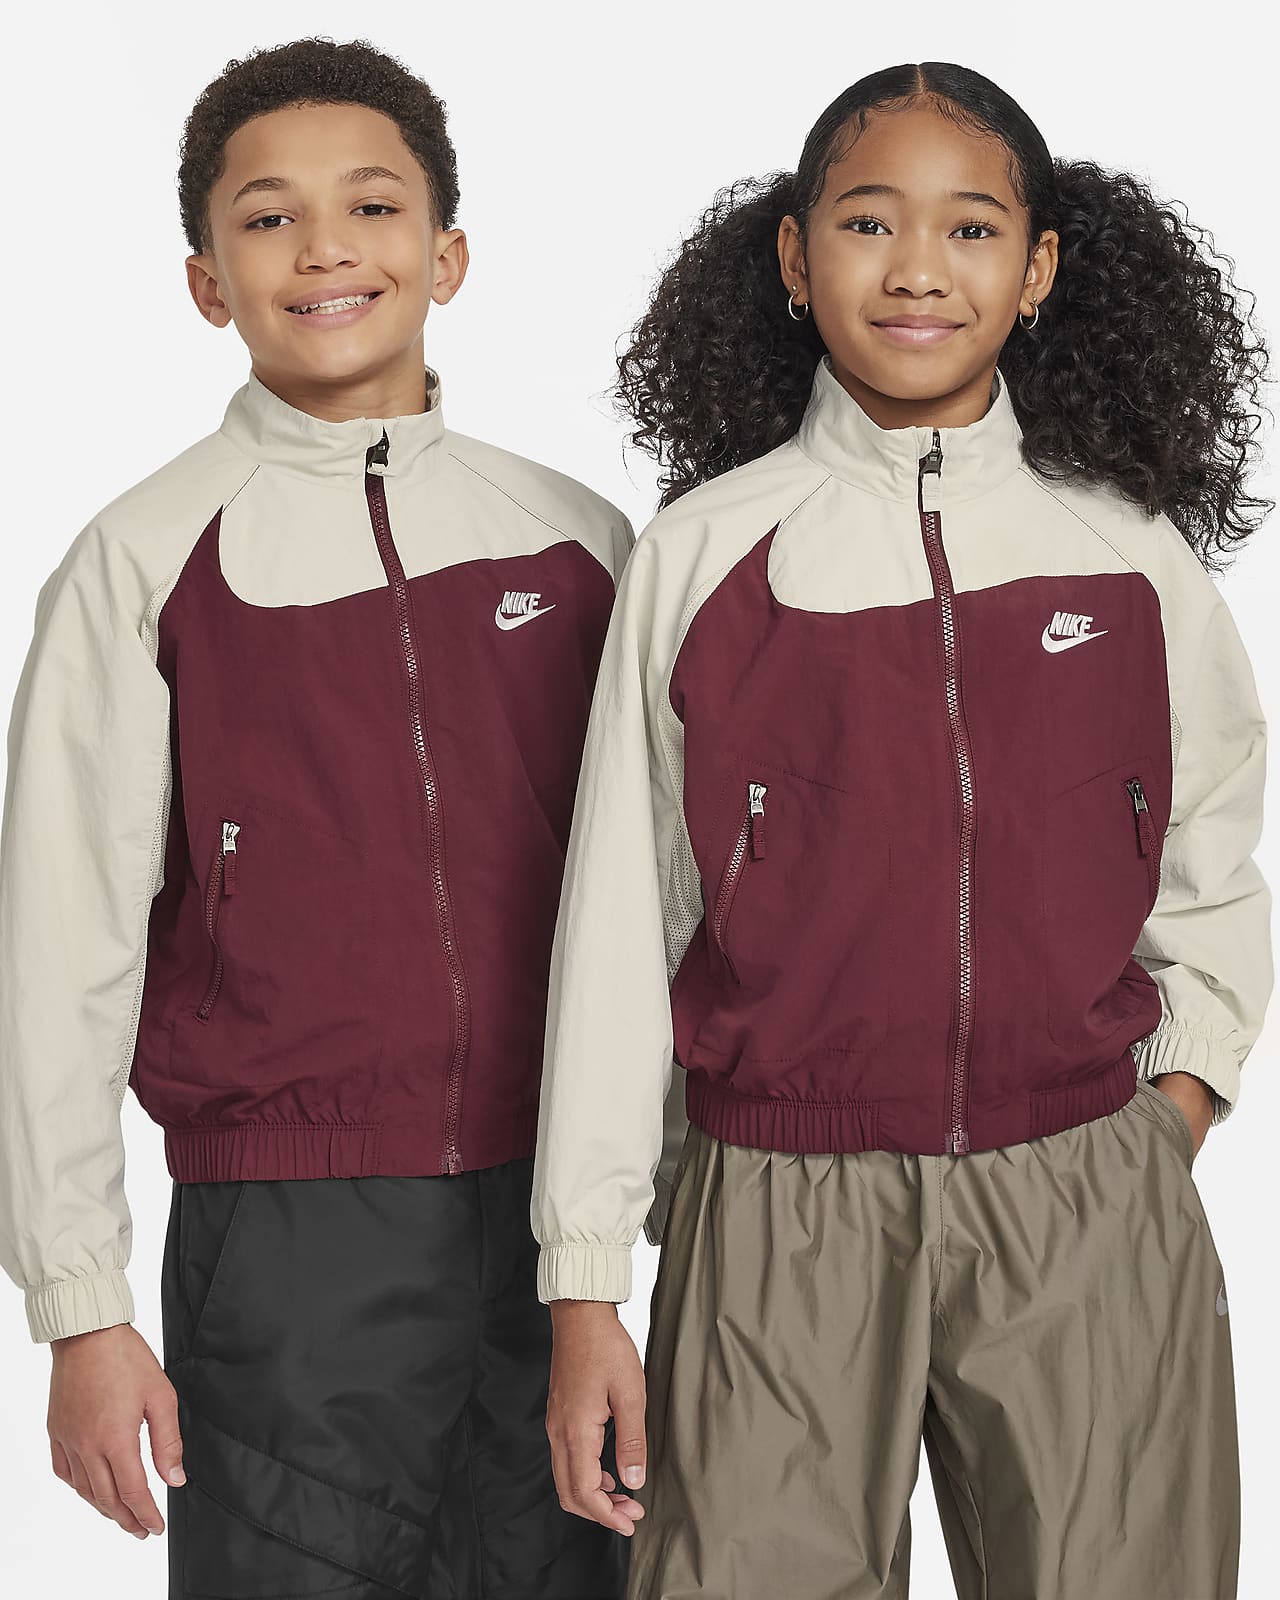 Nike Sportswear Amplify Big Kids' Woven Full-Zip Jacket